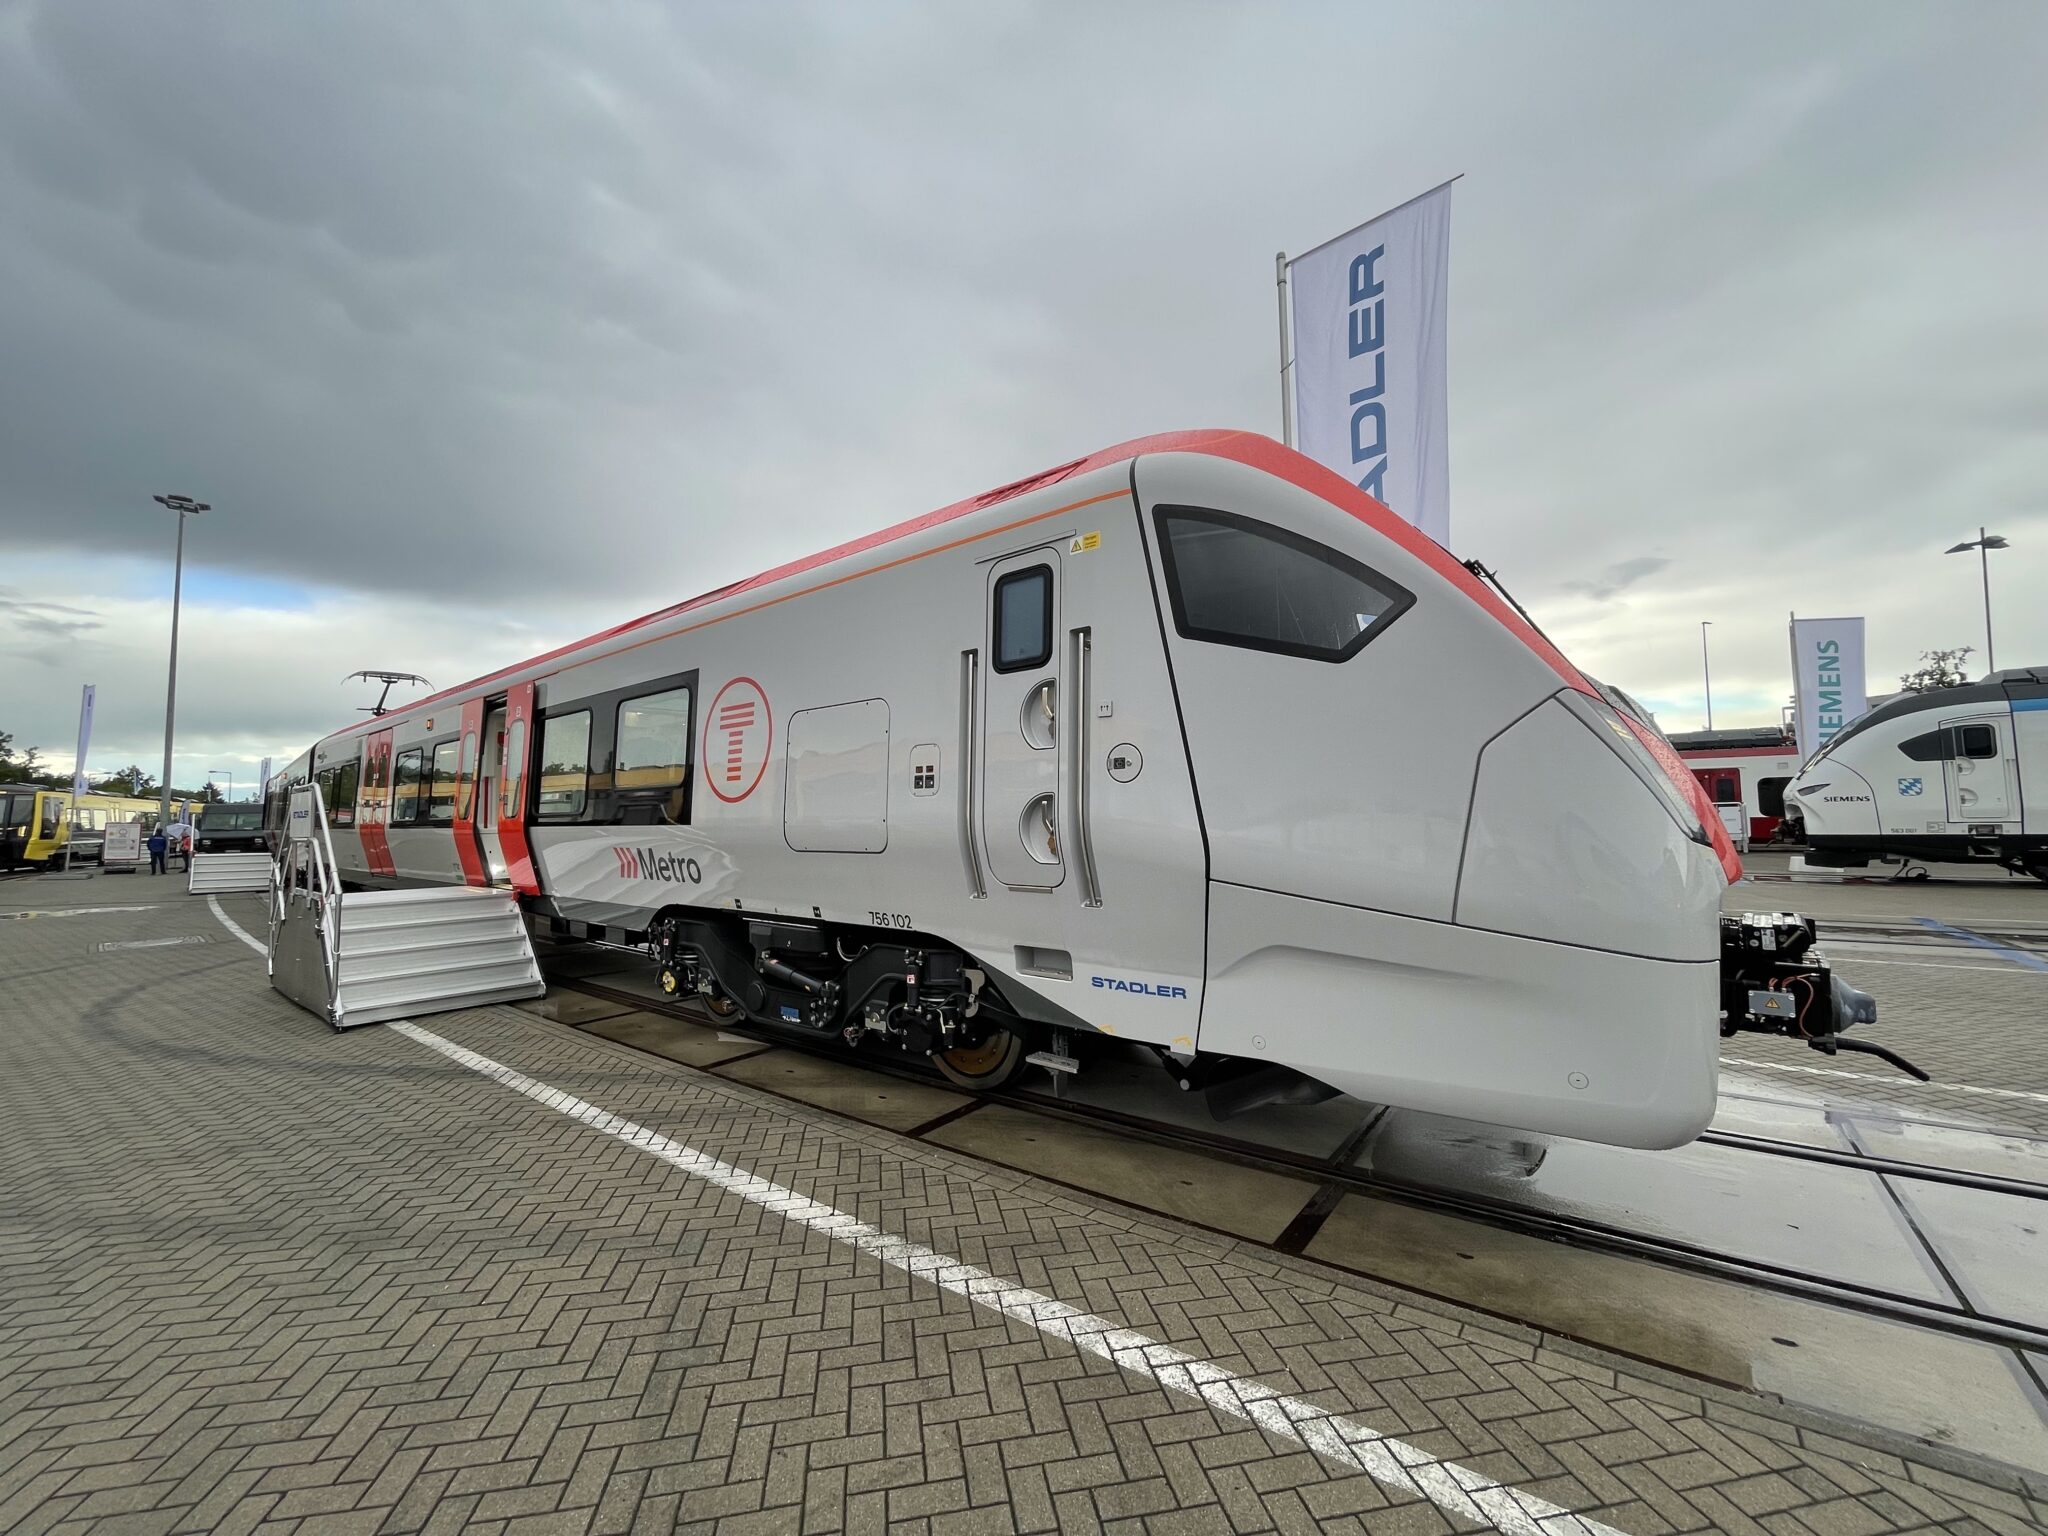 The Flirt Trimodal hybrid train by Stadler